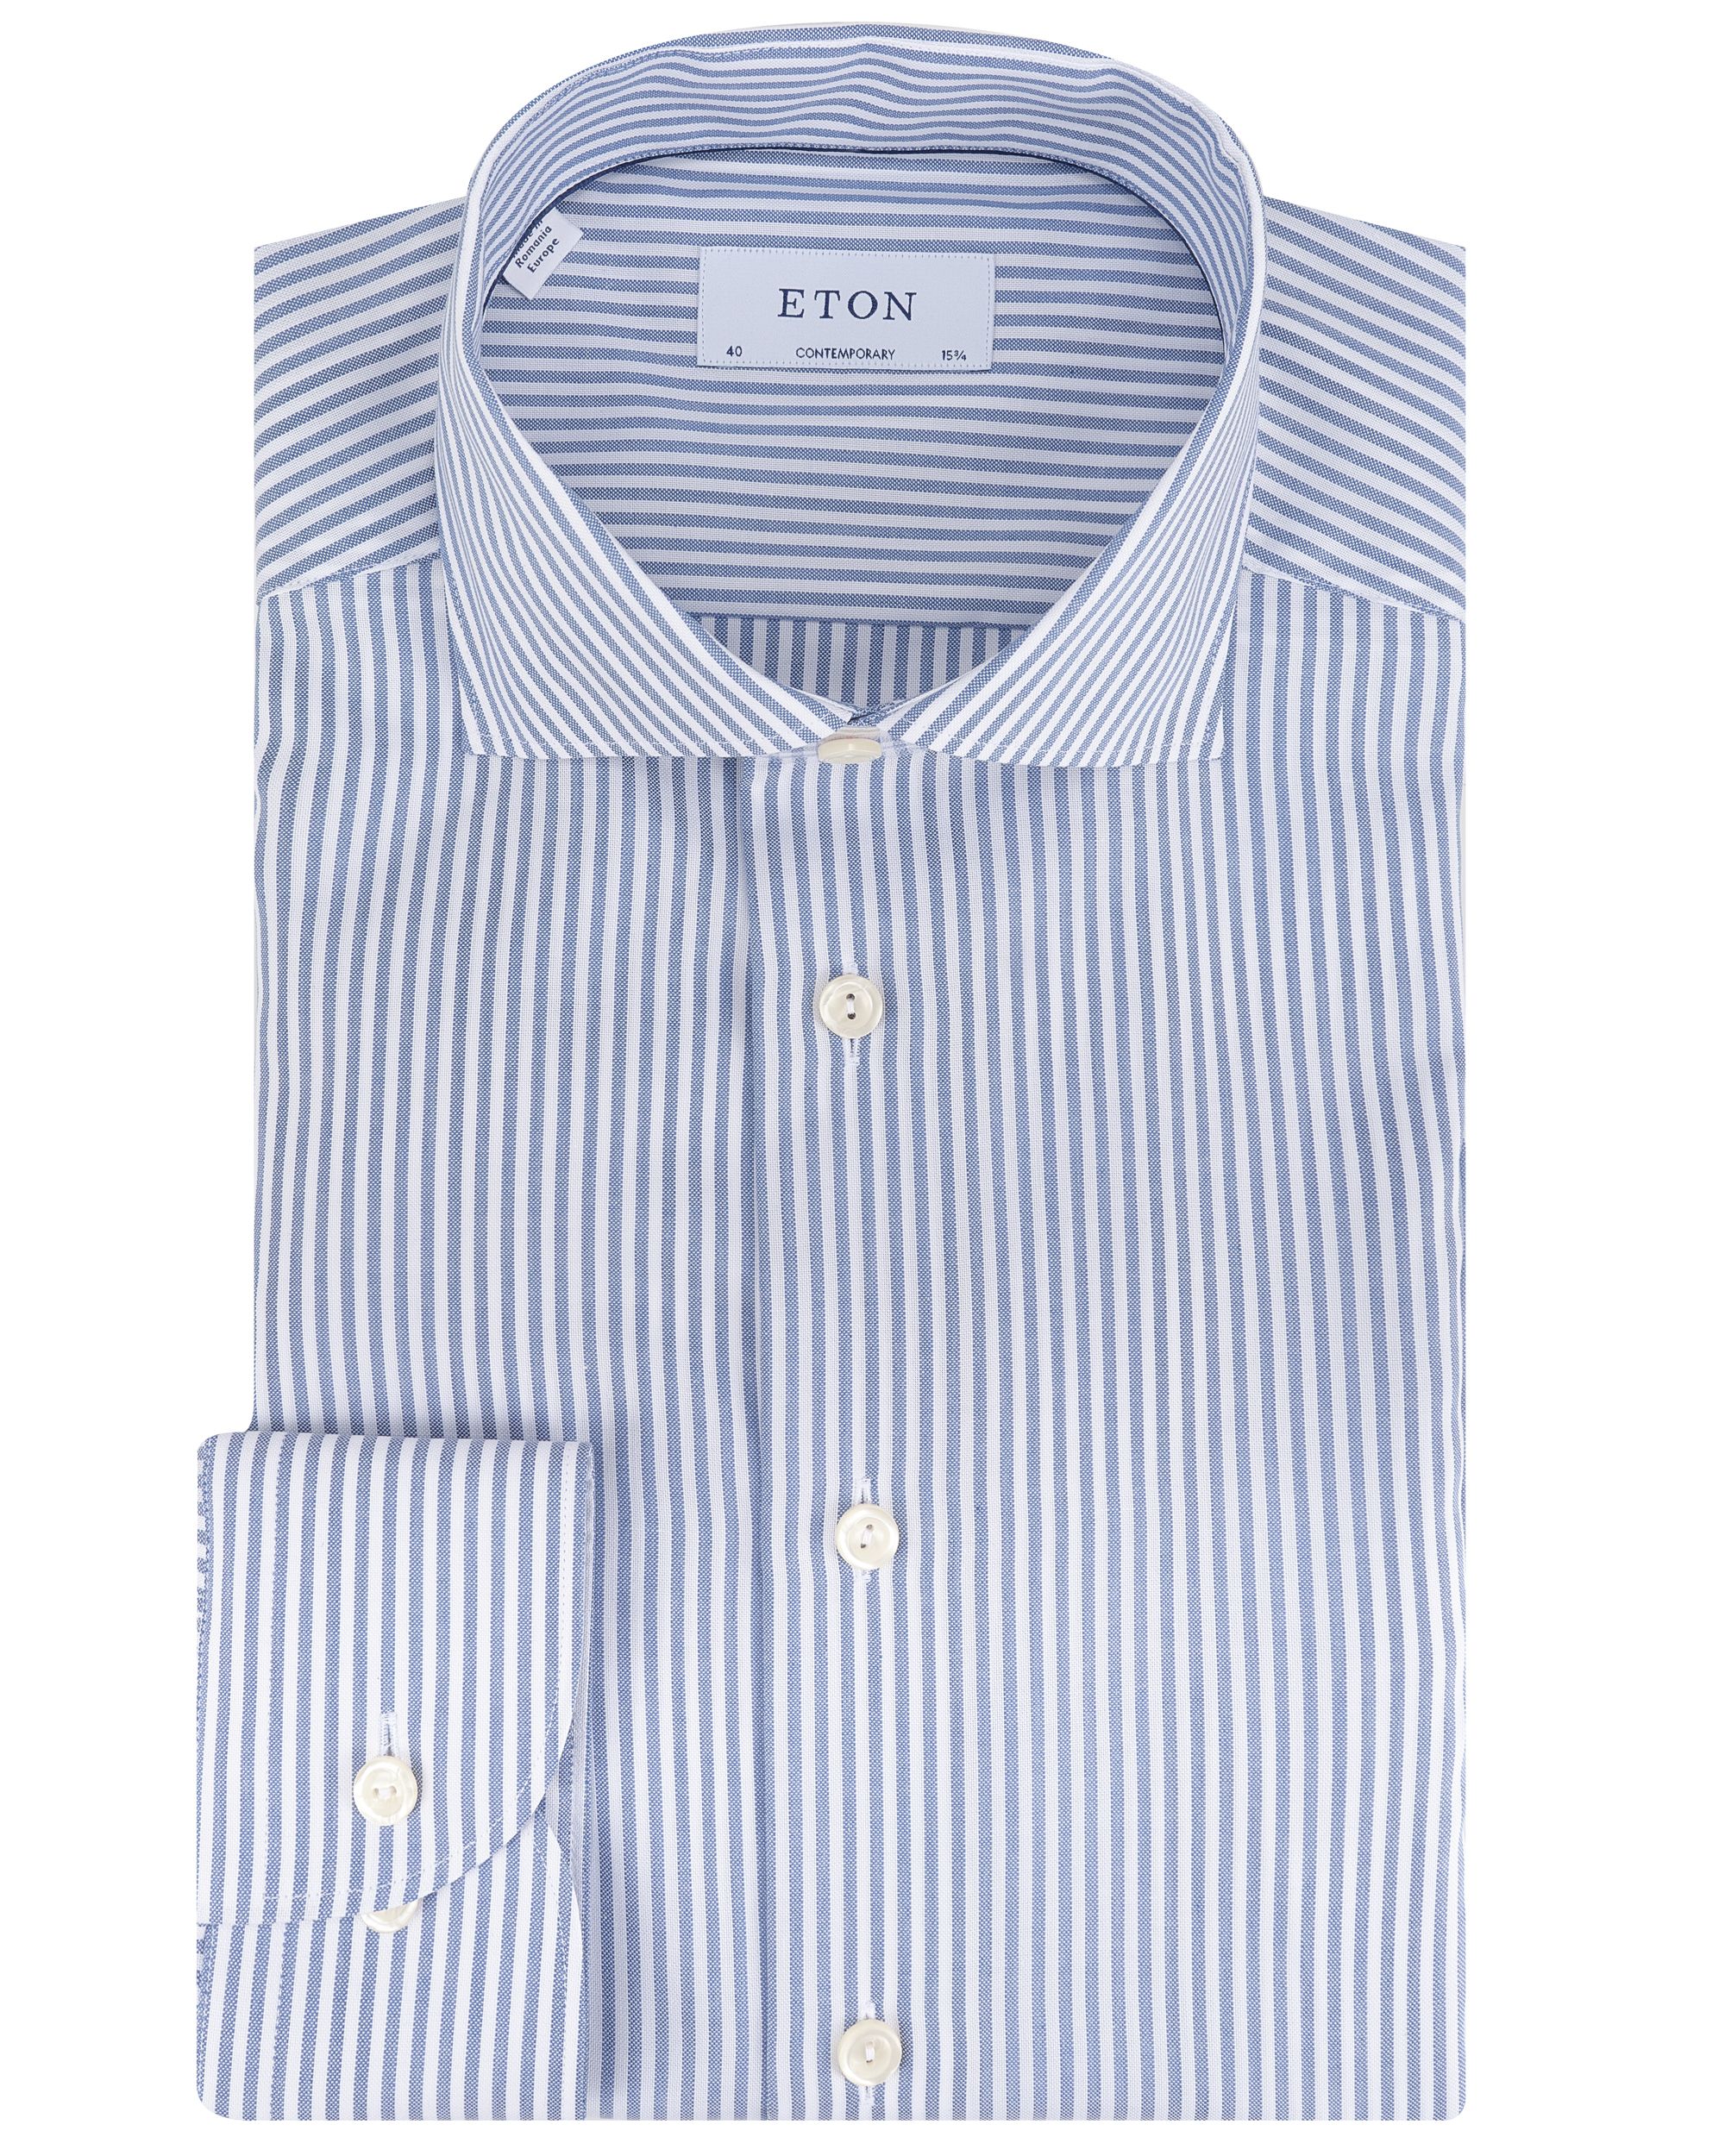 ETON Overhemd LM Blauw 091976-001-39